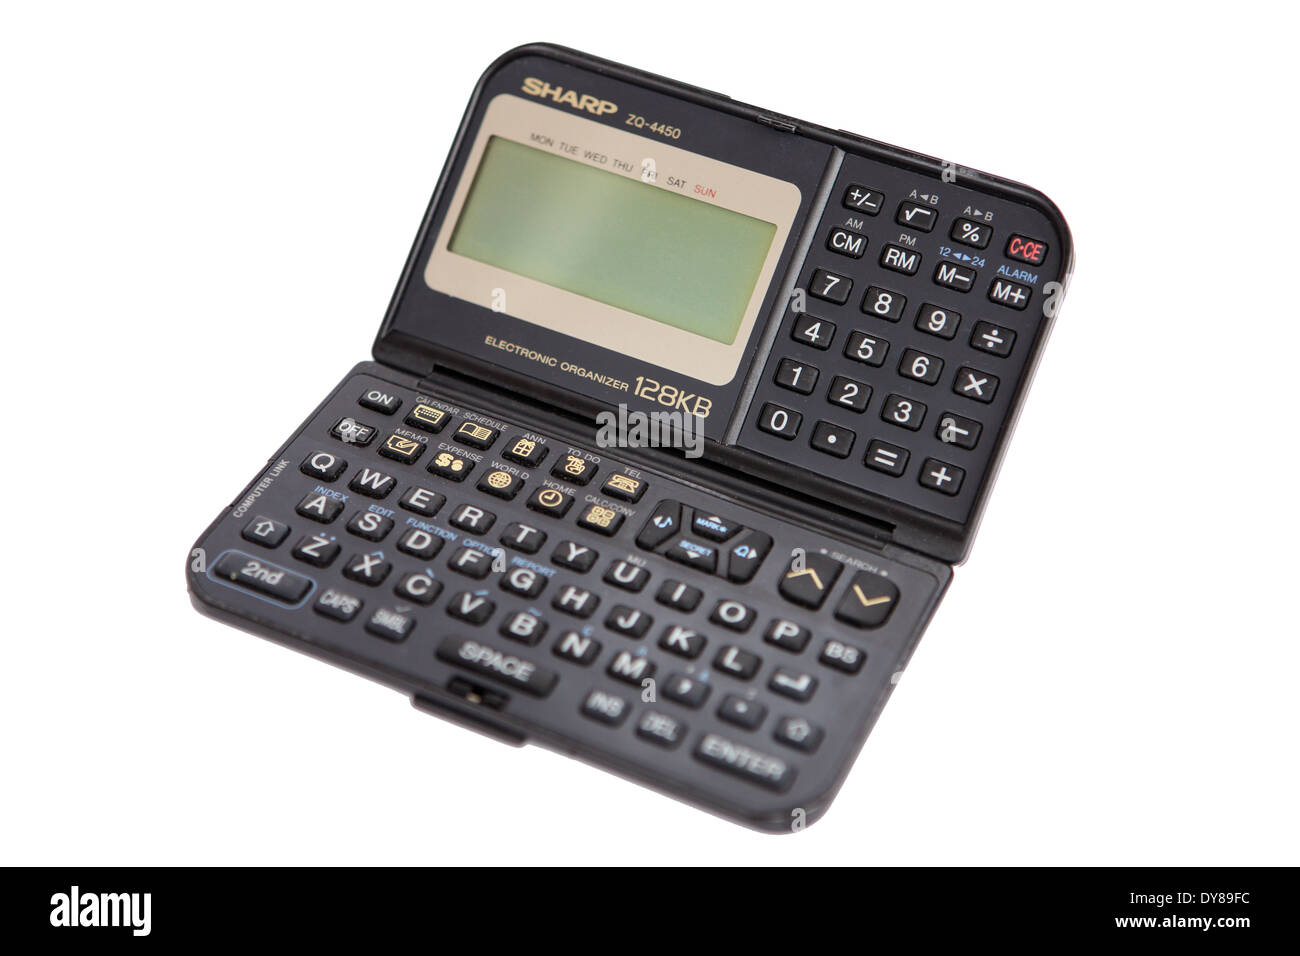 Electronic personal organiser un prodotto degli anni novanta una calcolatrice computer dimensioni con diario rimpiazzato in 2000's dagli smartphone Foto Stock